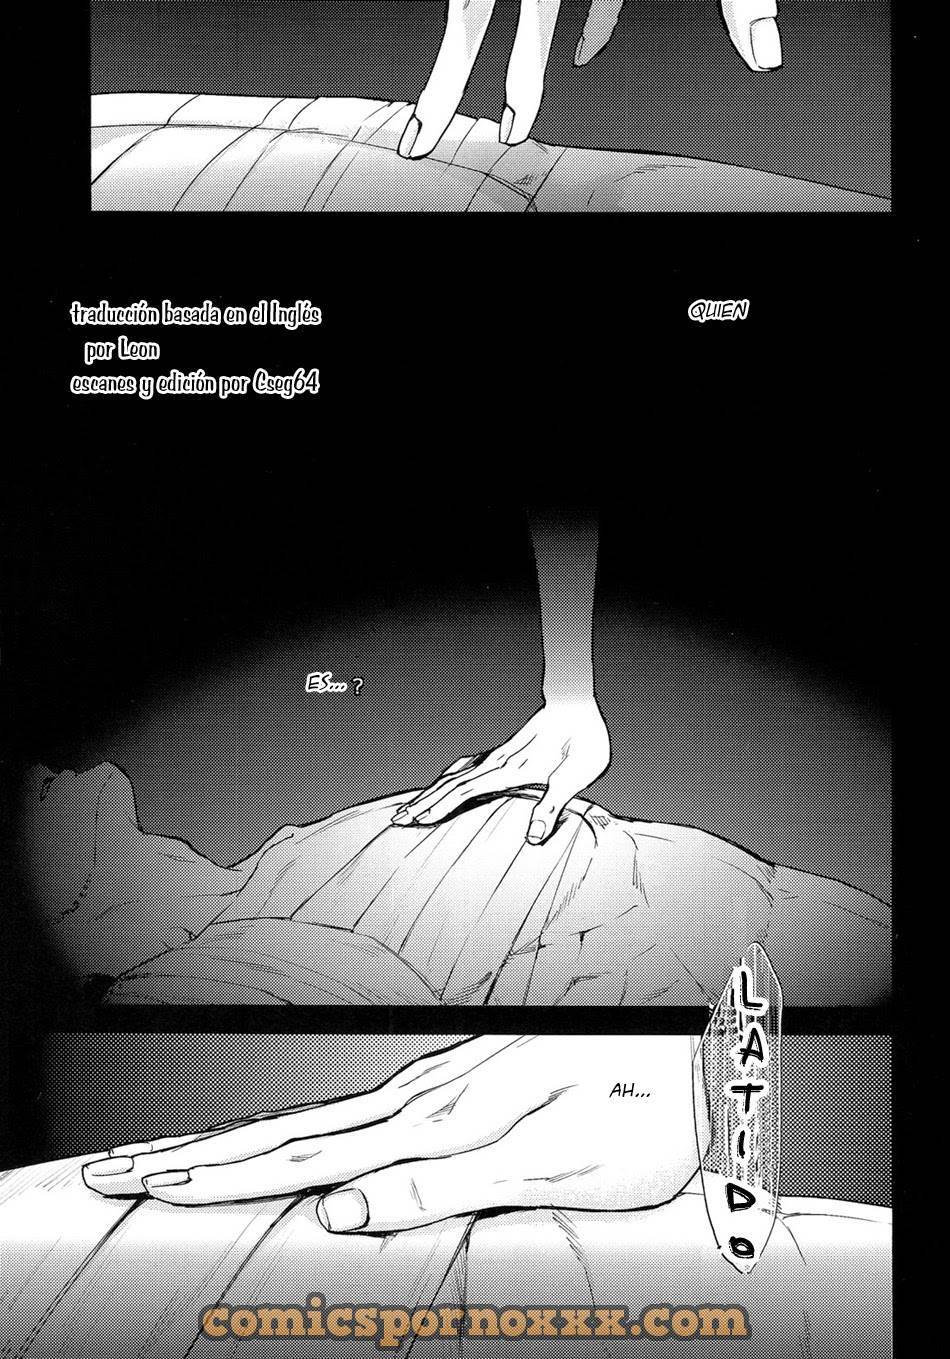 Attack on Titan Shingeki no Kyojin (Hand to Hug) - 3 - Comics Porno - Hentai Manga - Cartoon XXX